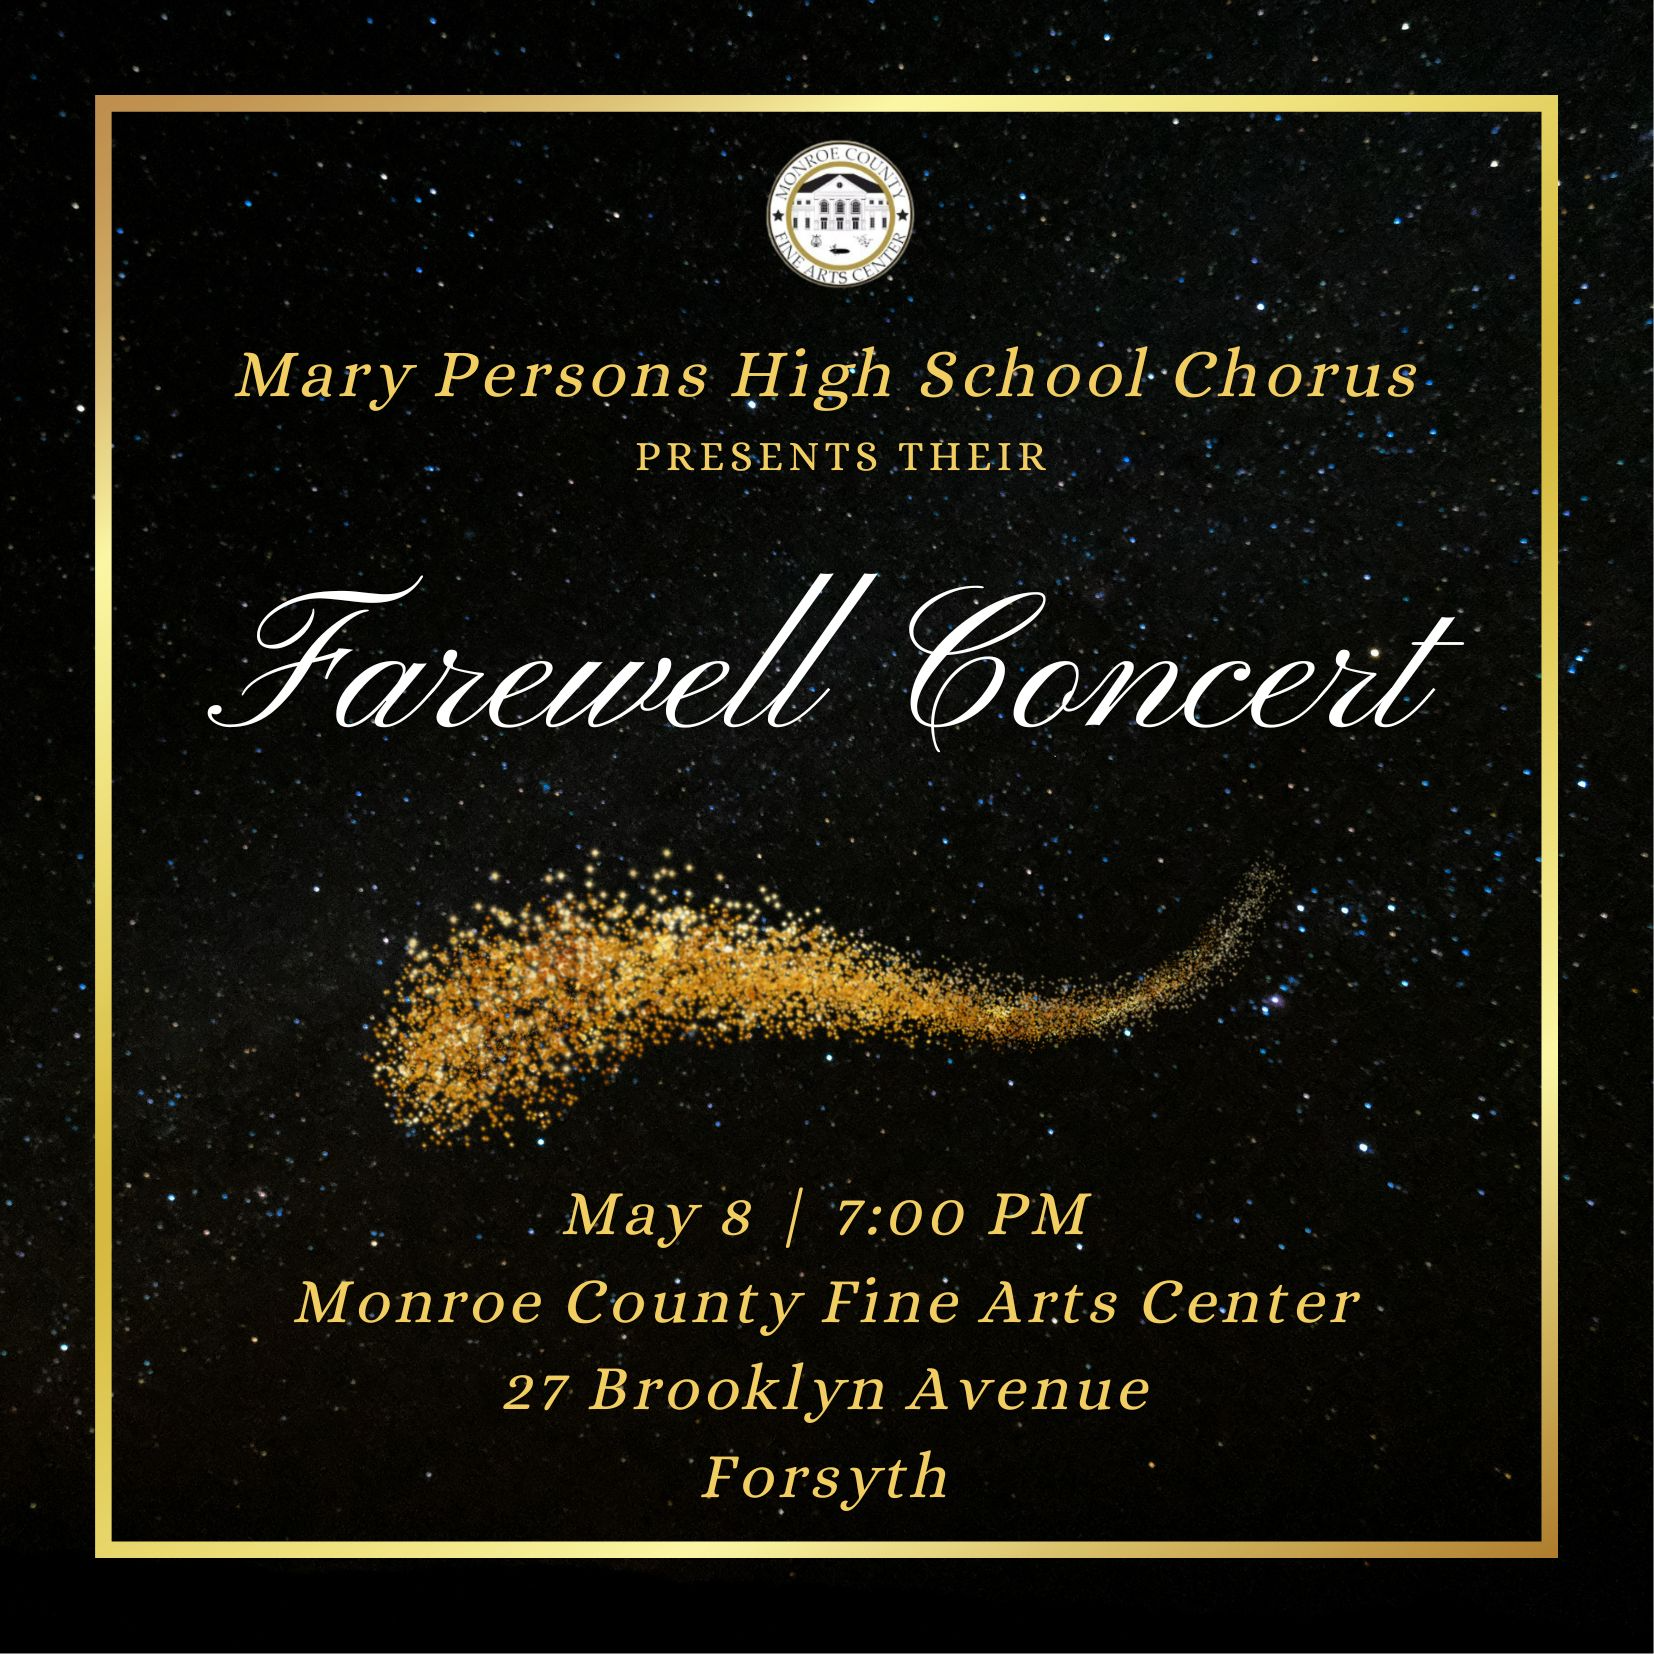 MPHS Chorus Concert on May 8 at 7 p.m. at the FAC